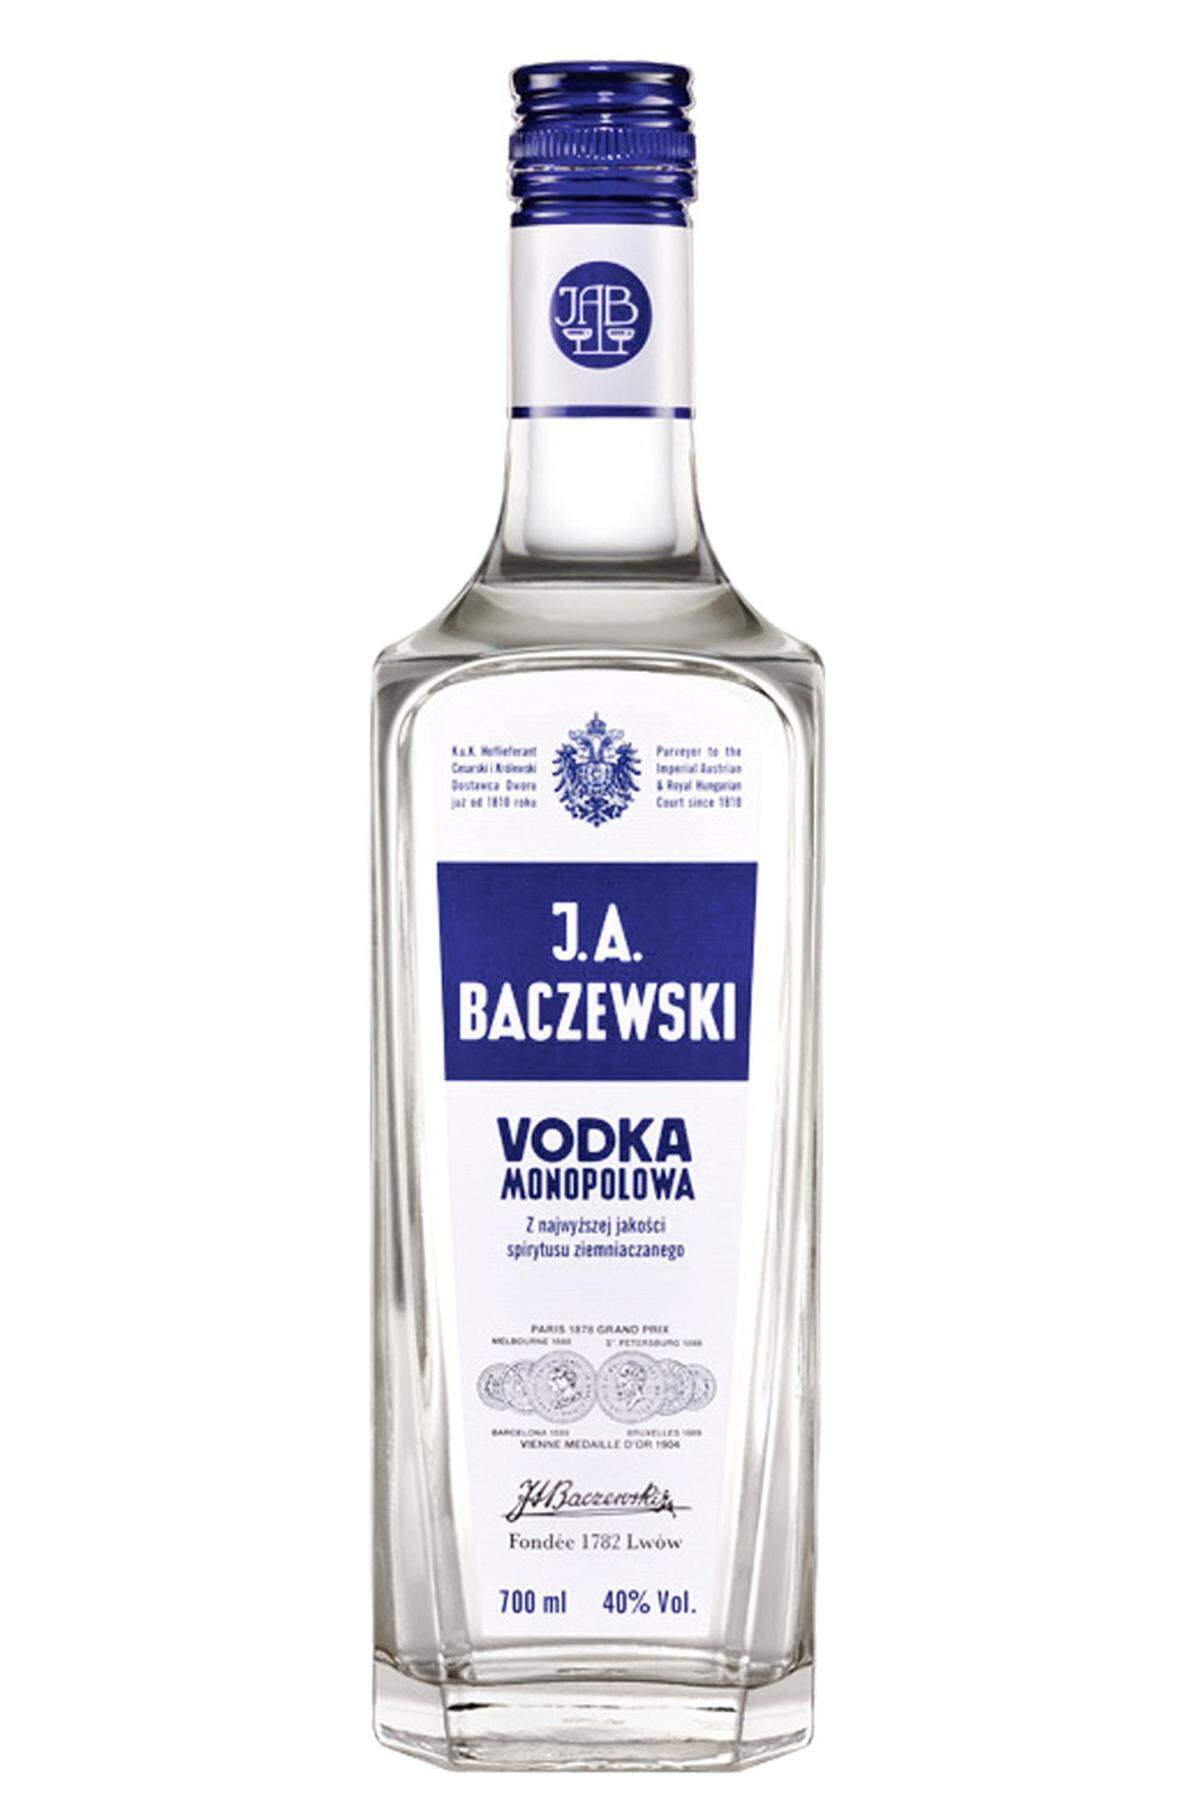 Seit 1782: Wodka und Gin von J. A. Baczewski aus Wien, weitgehend unbekannt.